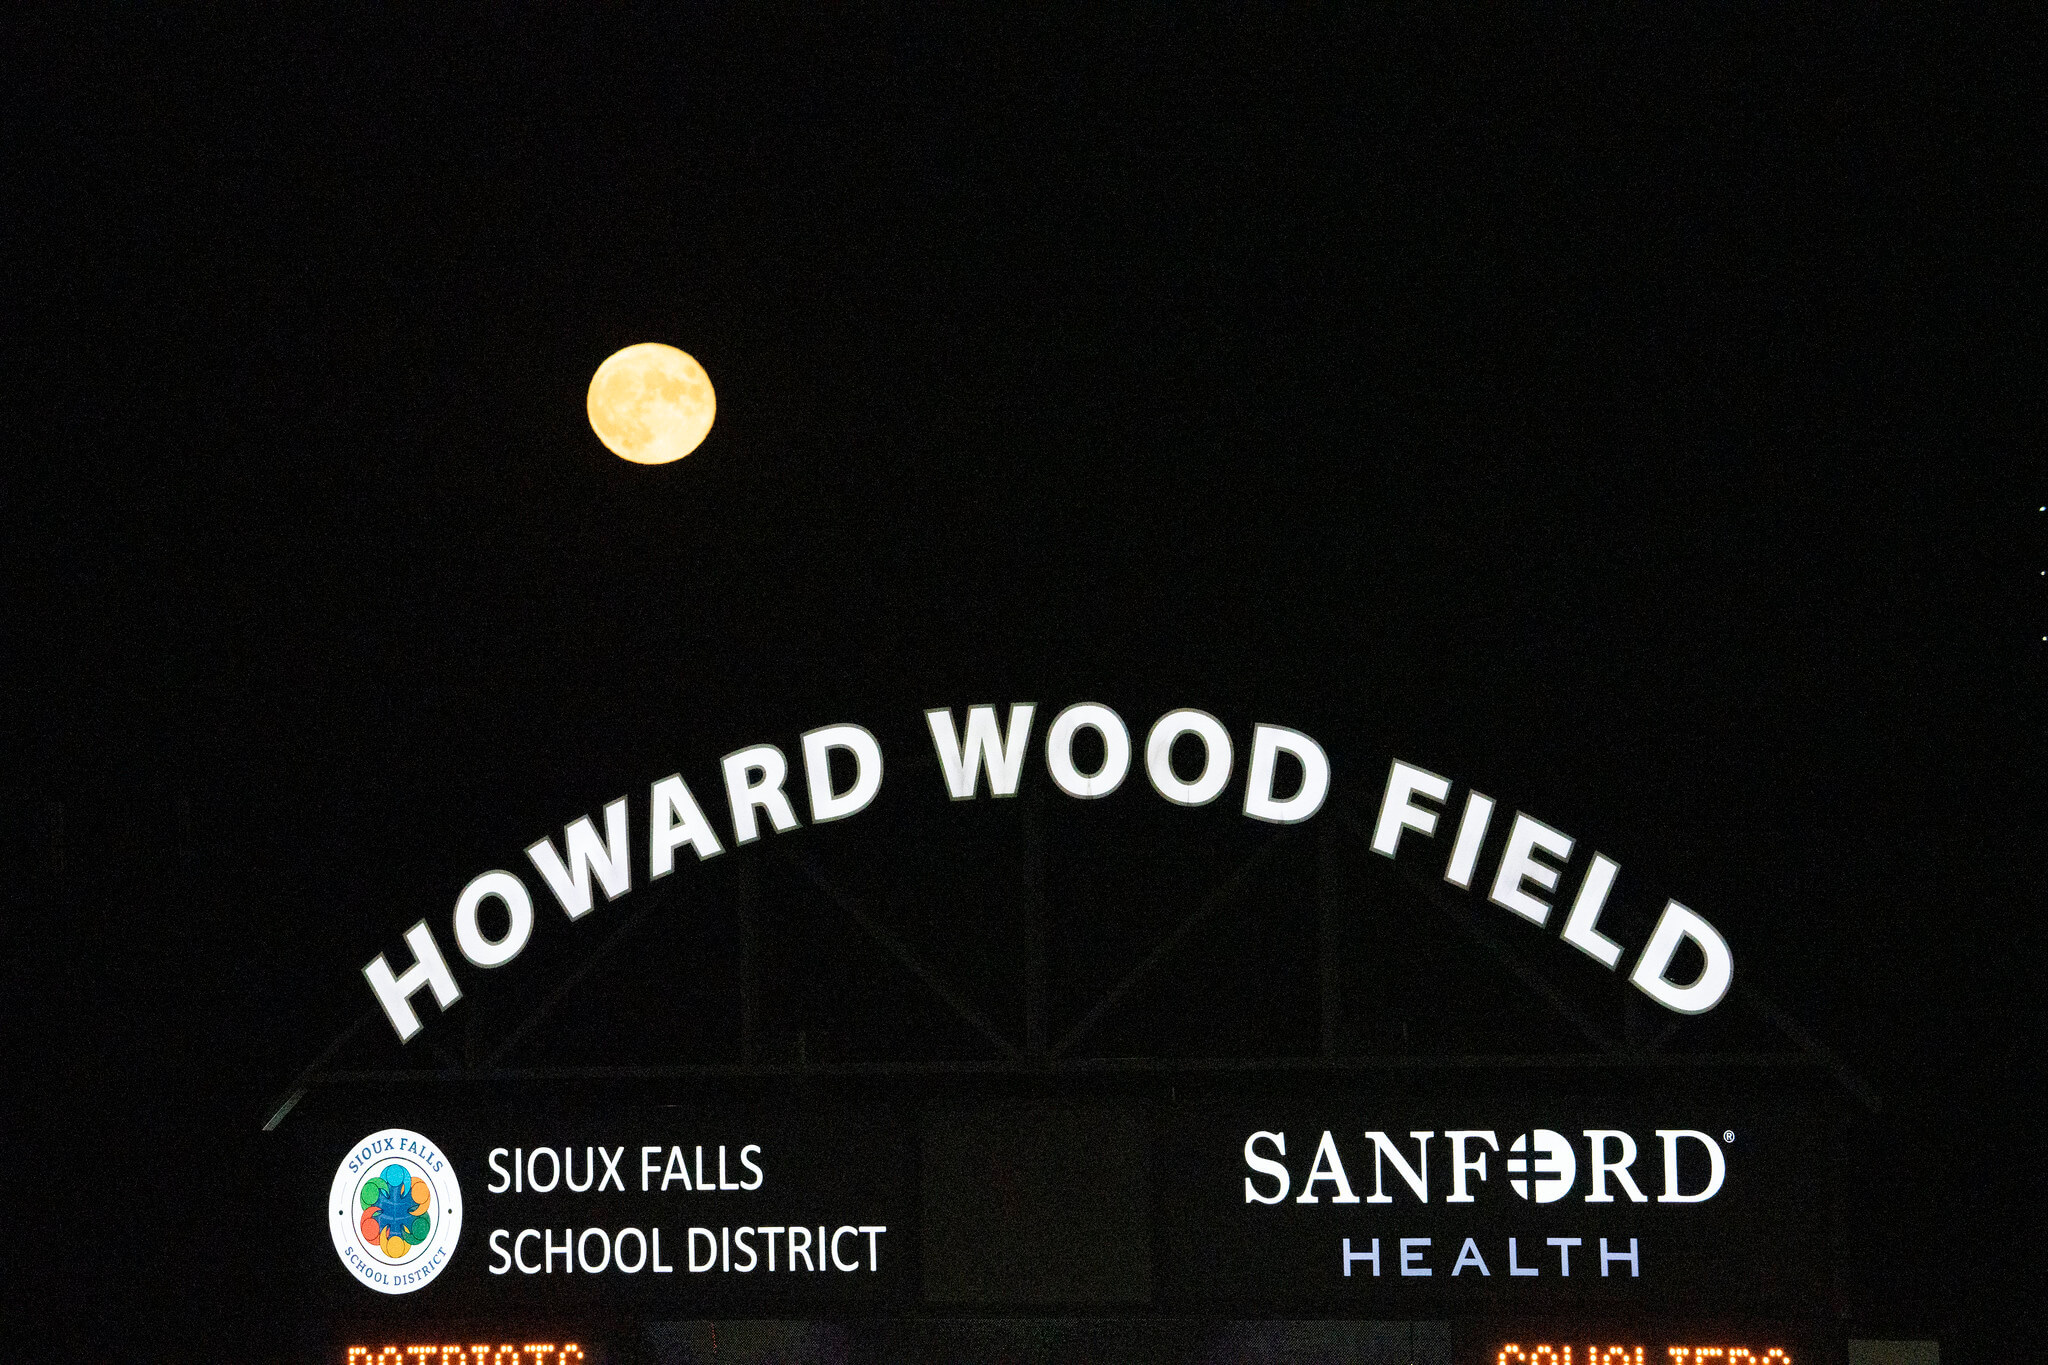 Howard Wood Field